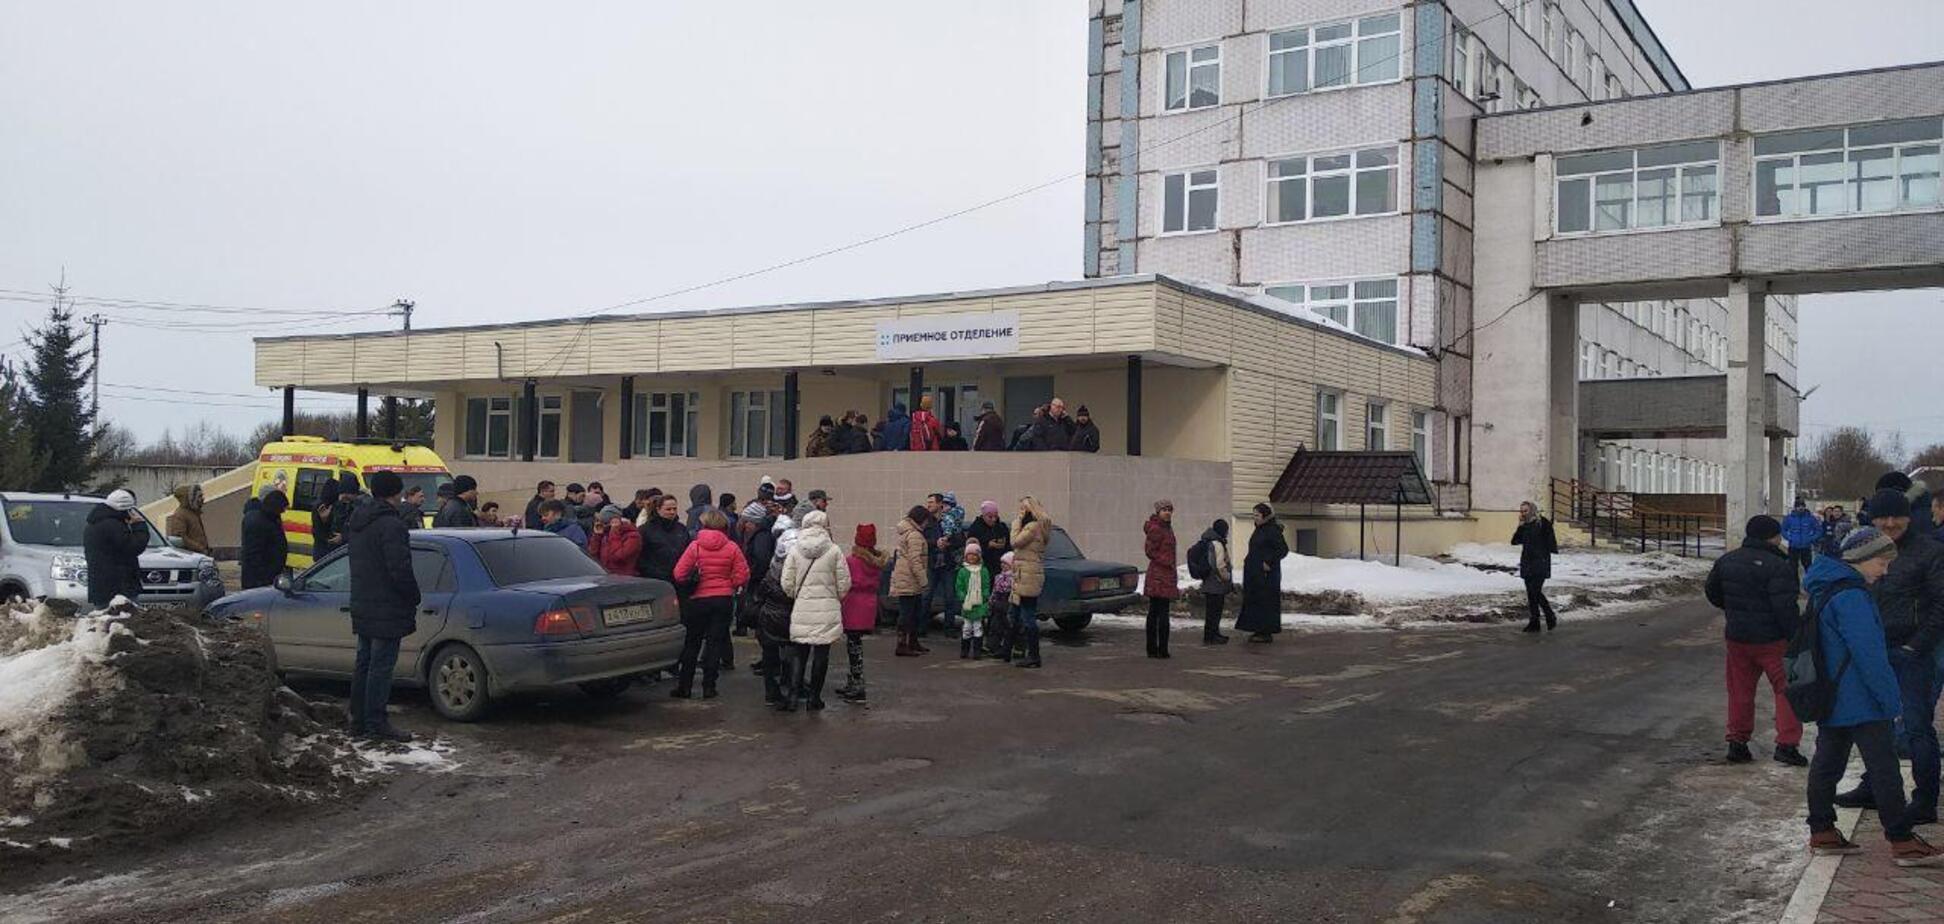 Тошнота и дезориентация: в российской школе массово отравились ядовитым газом